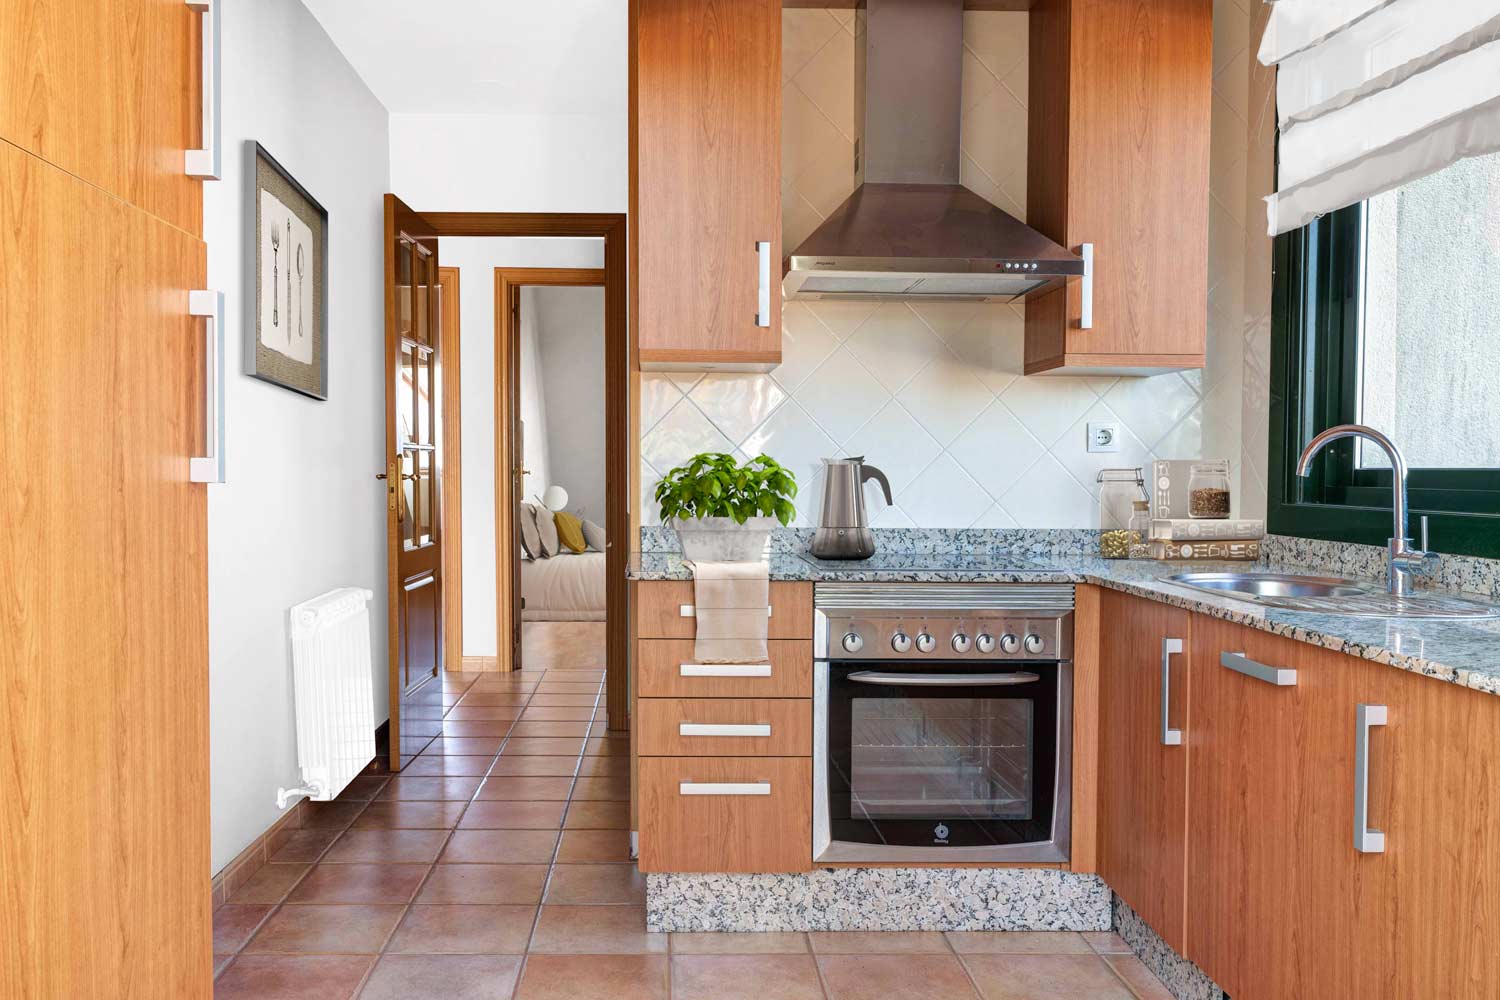 Cocina sencilla con Home Staging virtual_ Al fondo se ve la habtación a través de la puerta